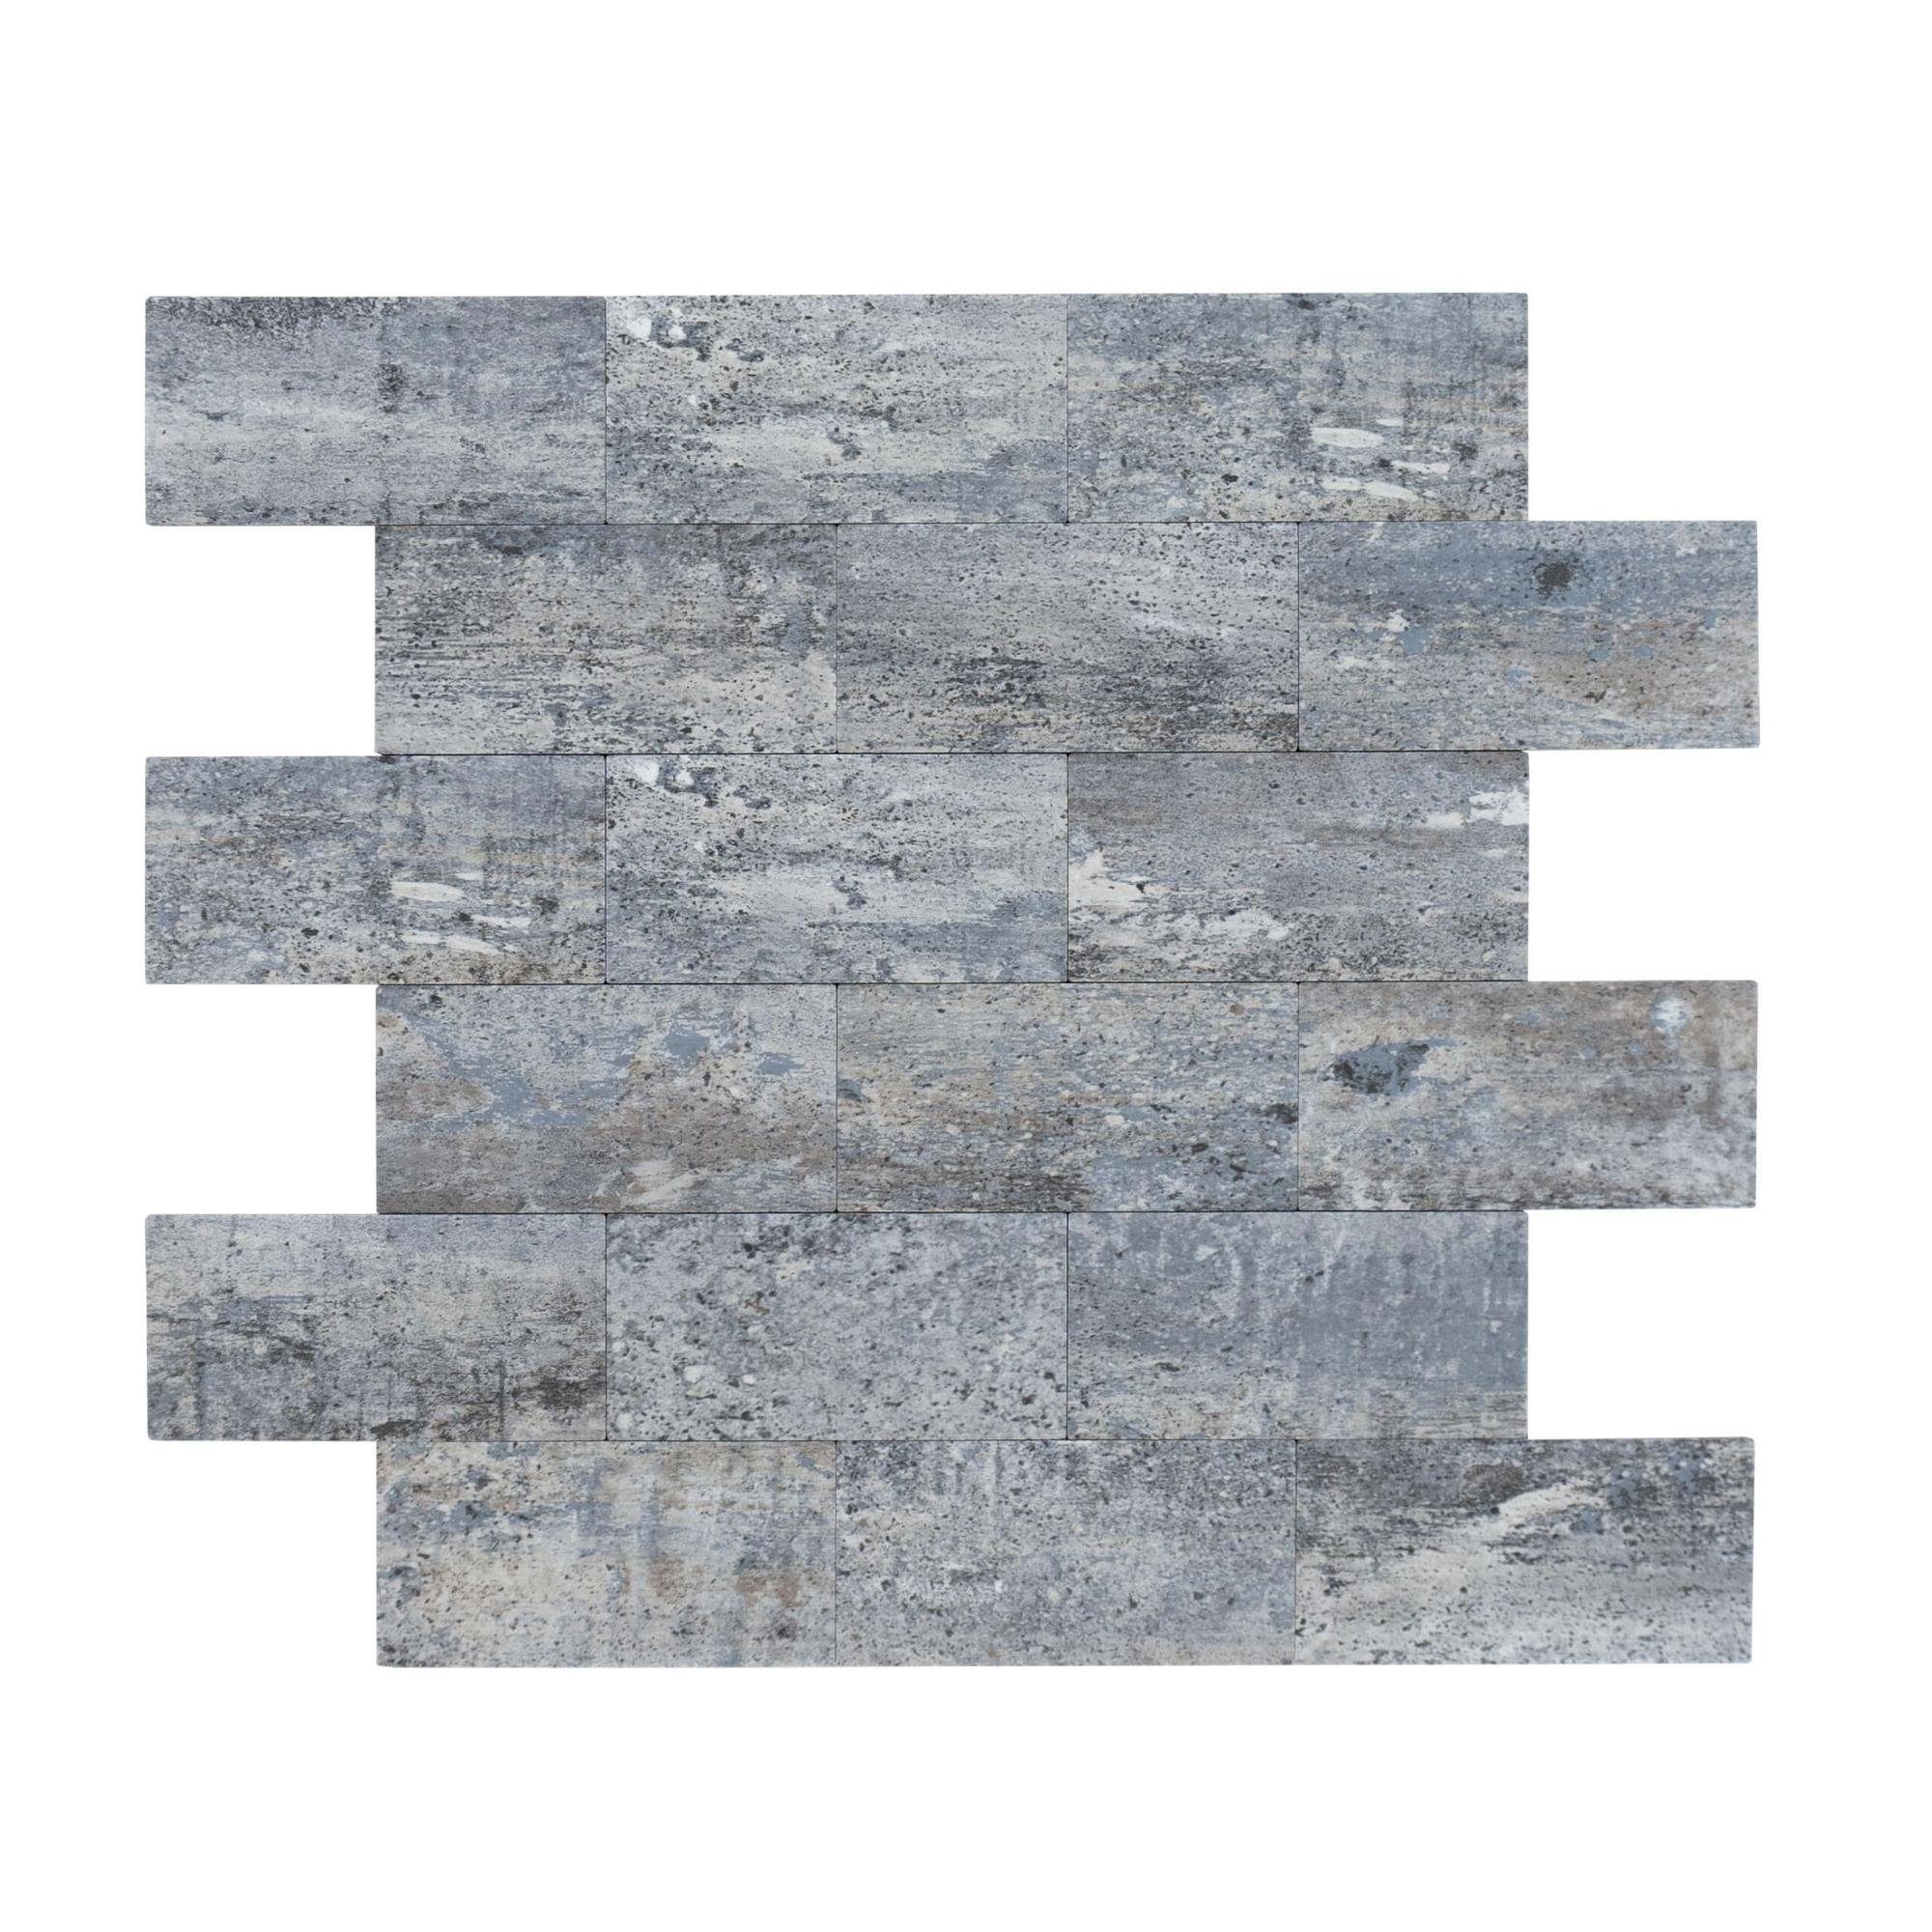 Dalsys Wandpaneel 1m² 11 Stück selbstklebend, (Blaugrau Marmoroptik Steinoptik, 11-tlg., Wandfliese) feuchtigskeitsbeständig, einfach montiert, hochwertiges Material